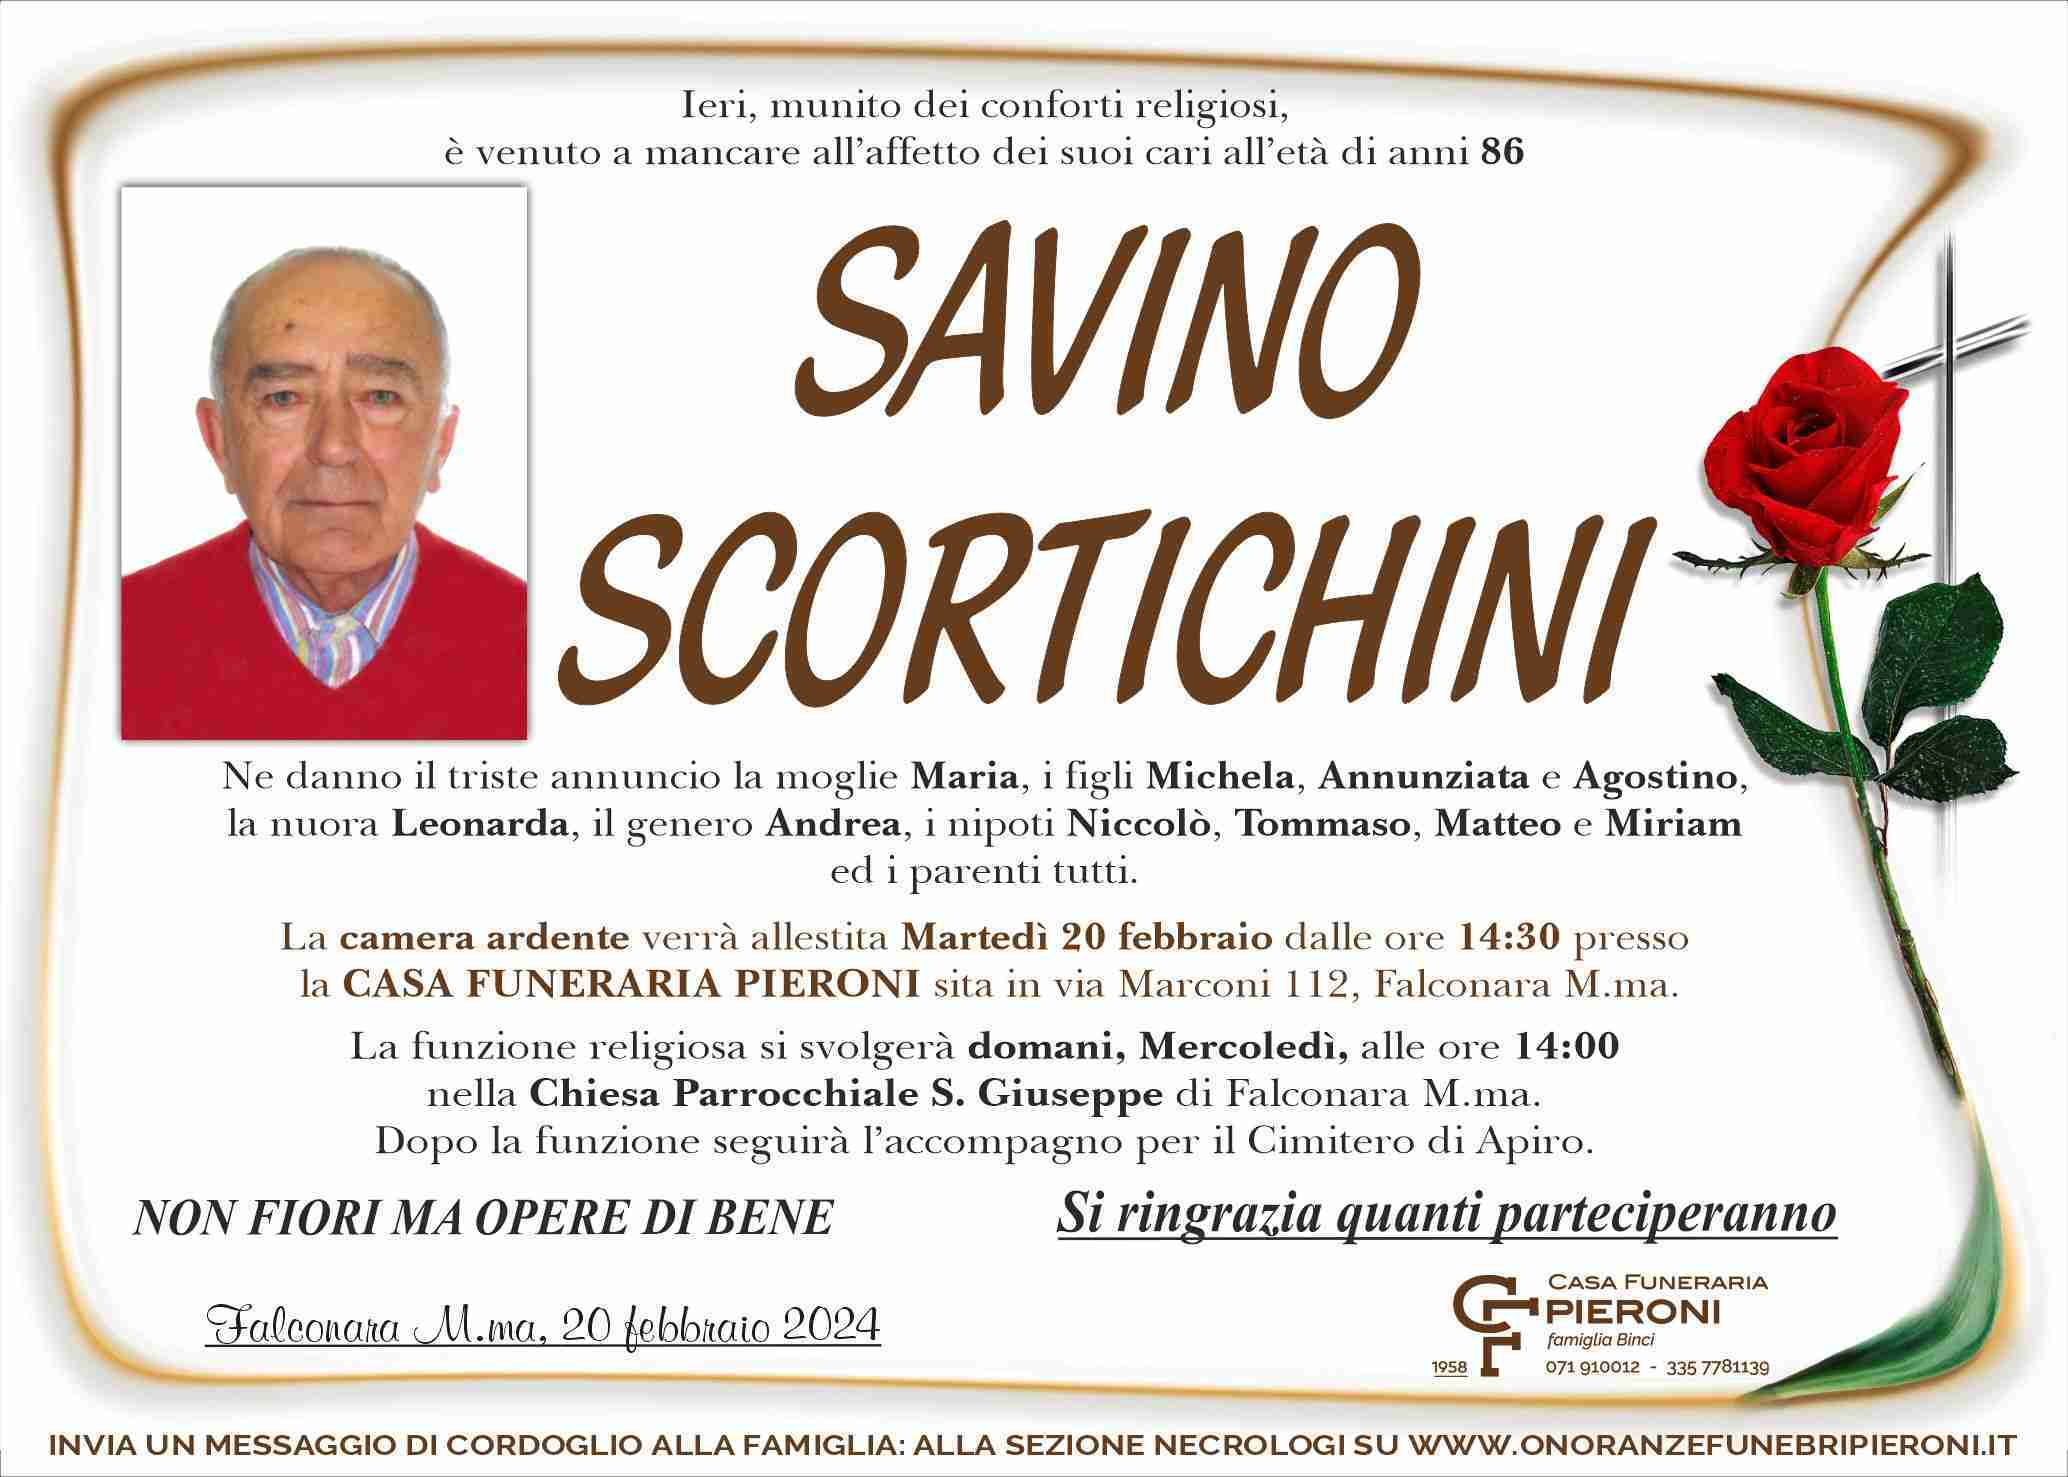 Savino Scortichini